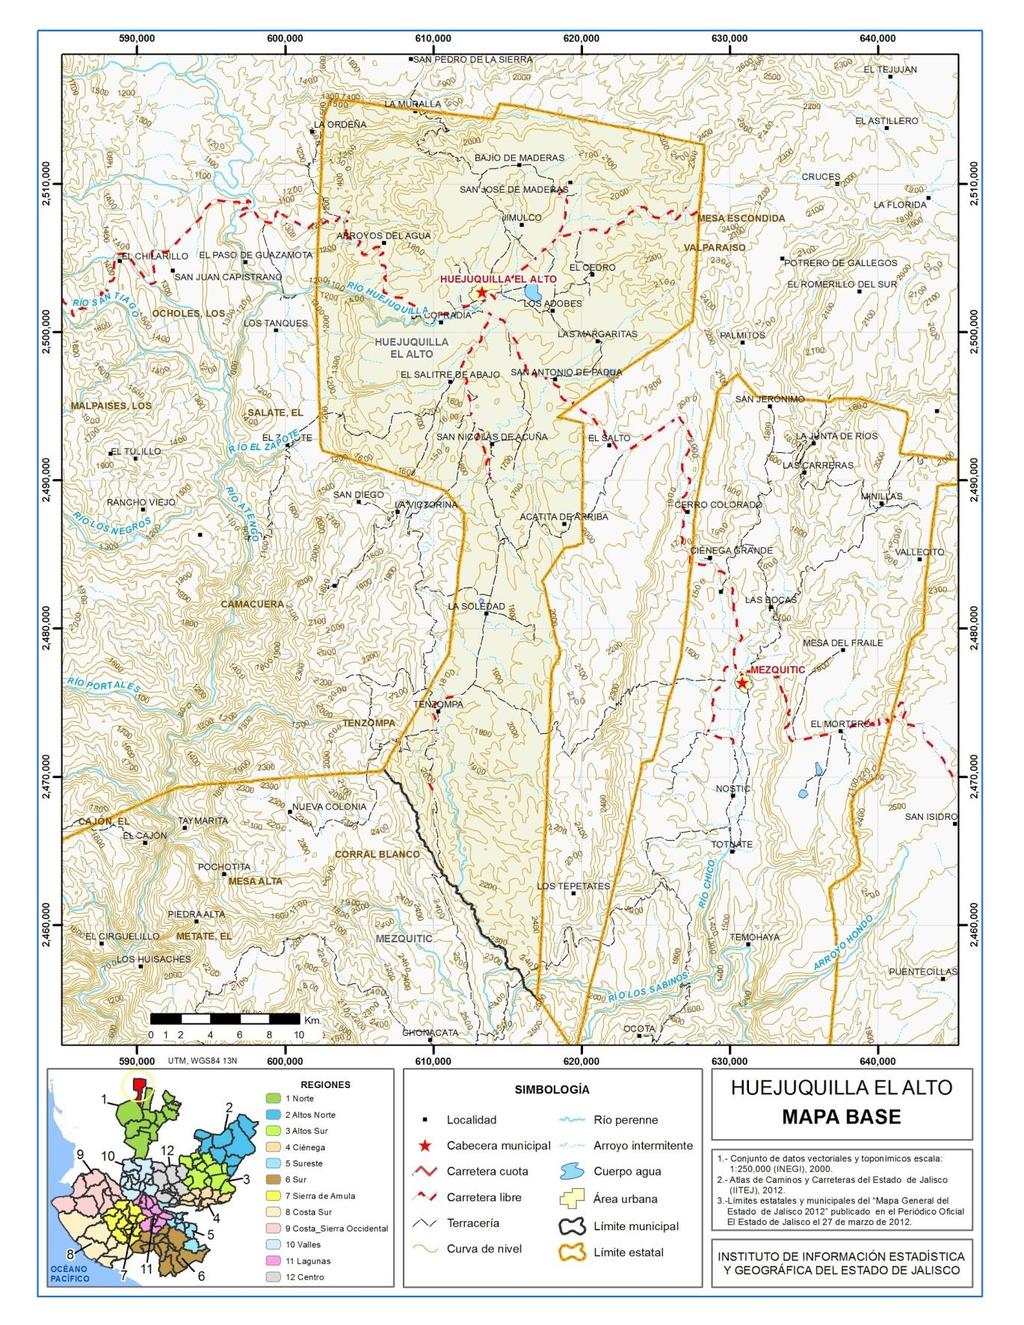 Página 7 Figura 2. Huejuquilla el Alto, Jalisco. Mapa base.